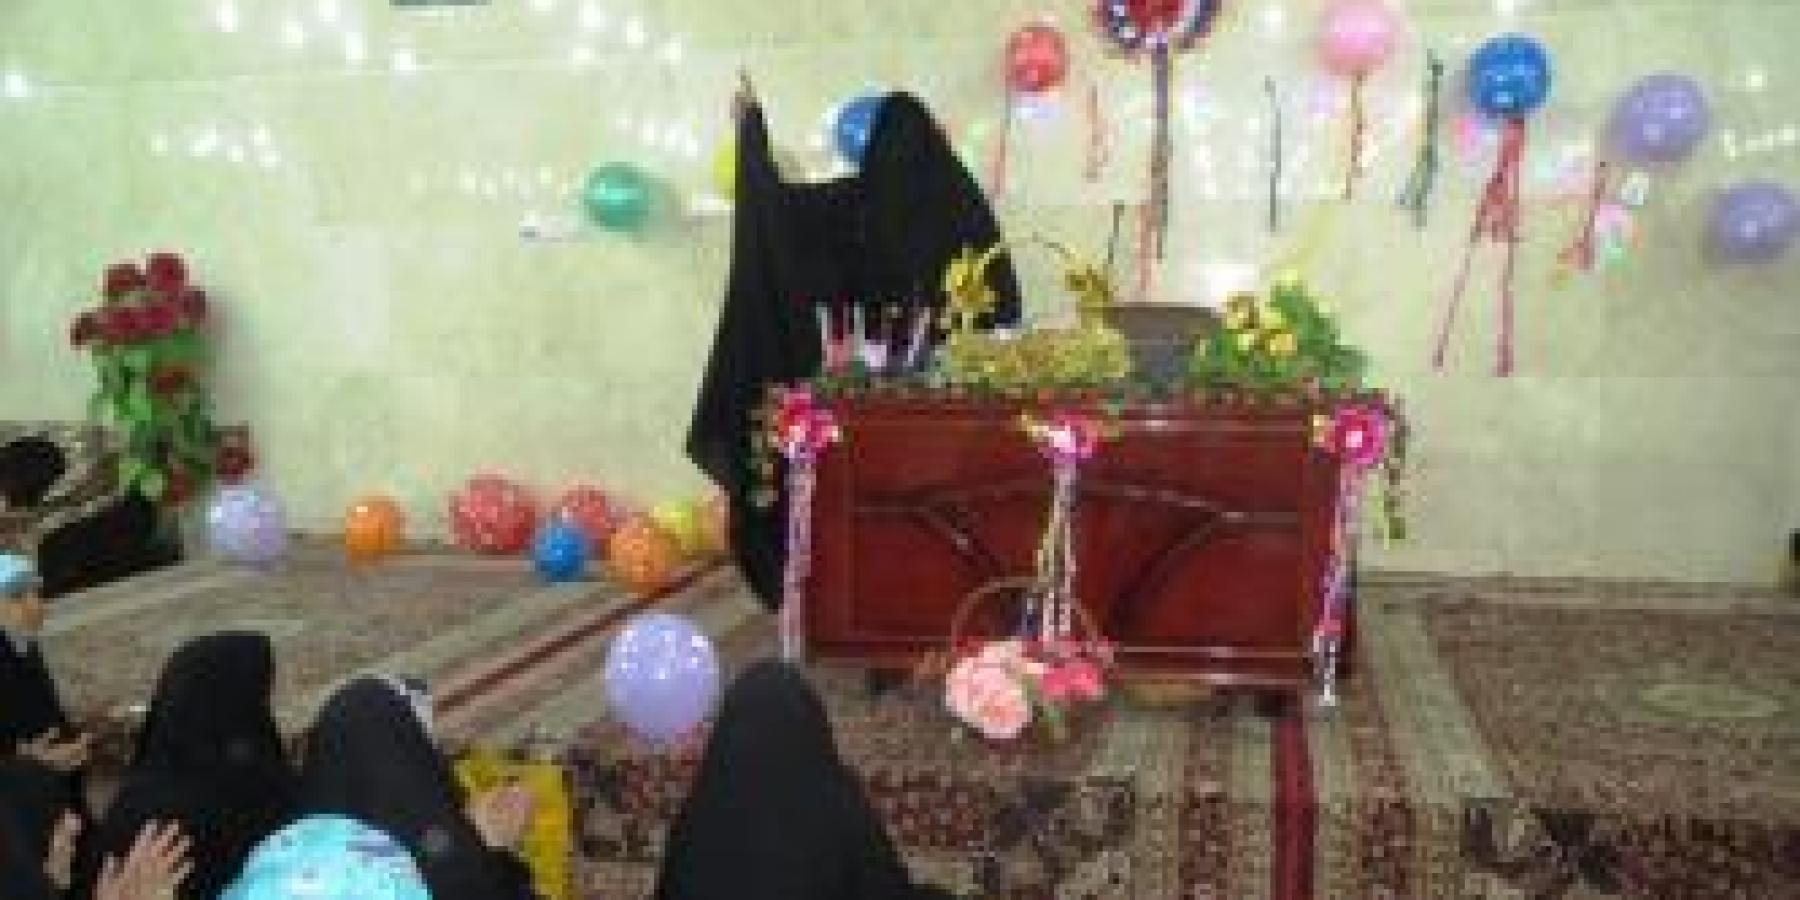 شعبة التعليم النسوي في العتبة العلوية المقدسة تقيم احتفالية بمناسبة عيد الغديرالأغر